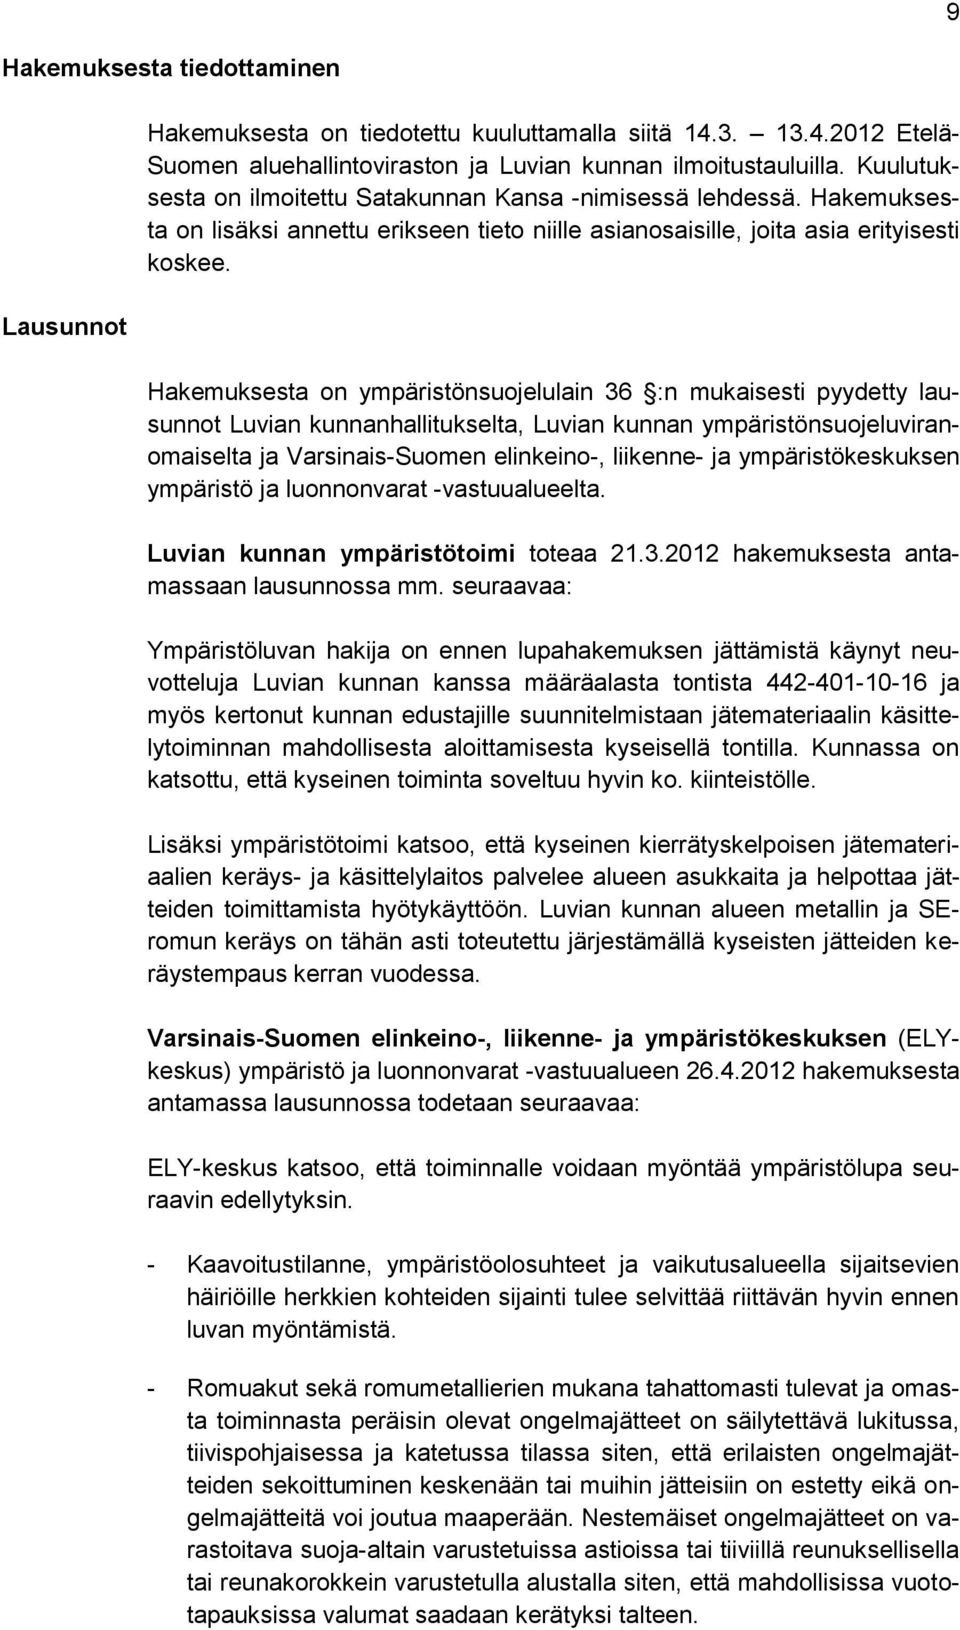 Hakemuksesta on ympäristönsuojelulain 36 :n mukaisesti pyydetty lausunnot Luvian kunnanhallitukselta, Luvian kunnan ympäristönsuojeluviranomaiselta ja Varsinais-Suomen elinkeino-, liikenne- ja